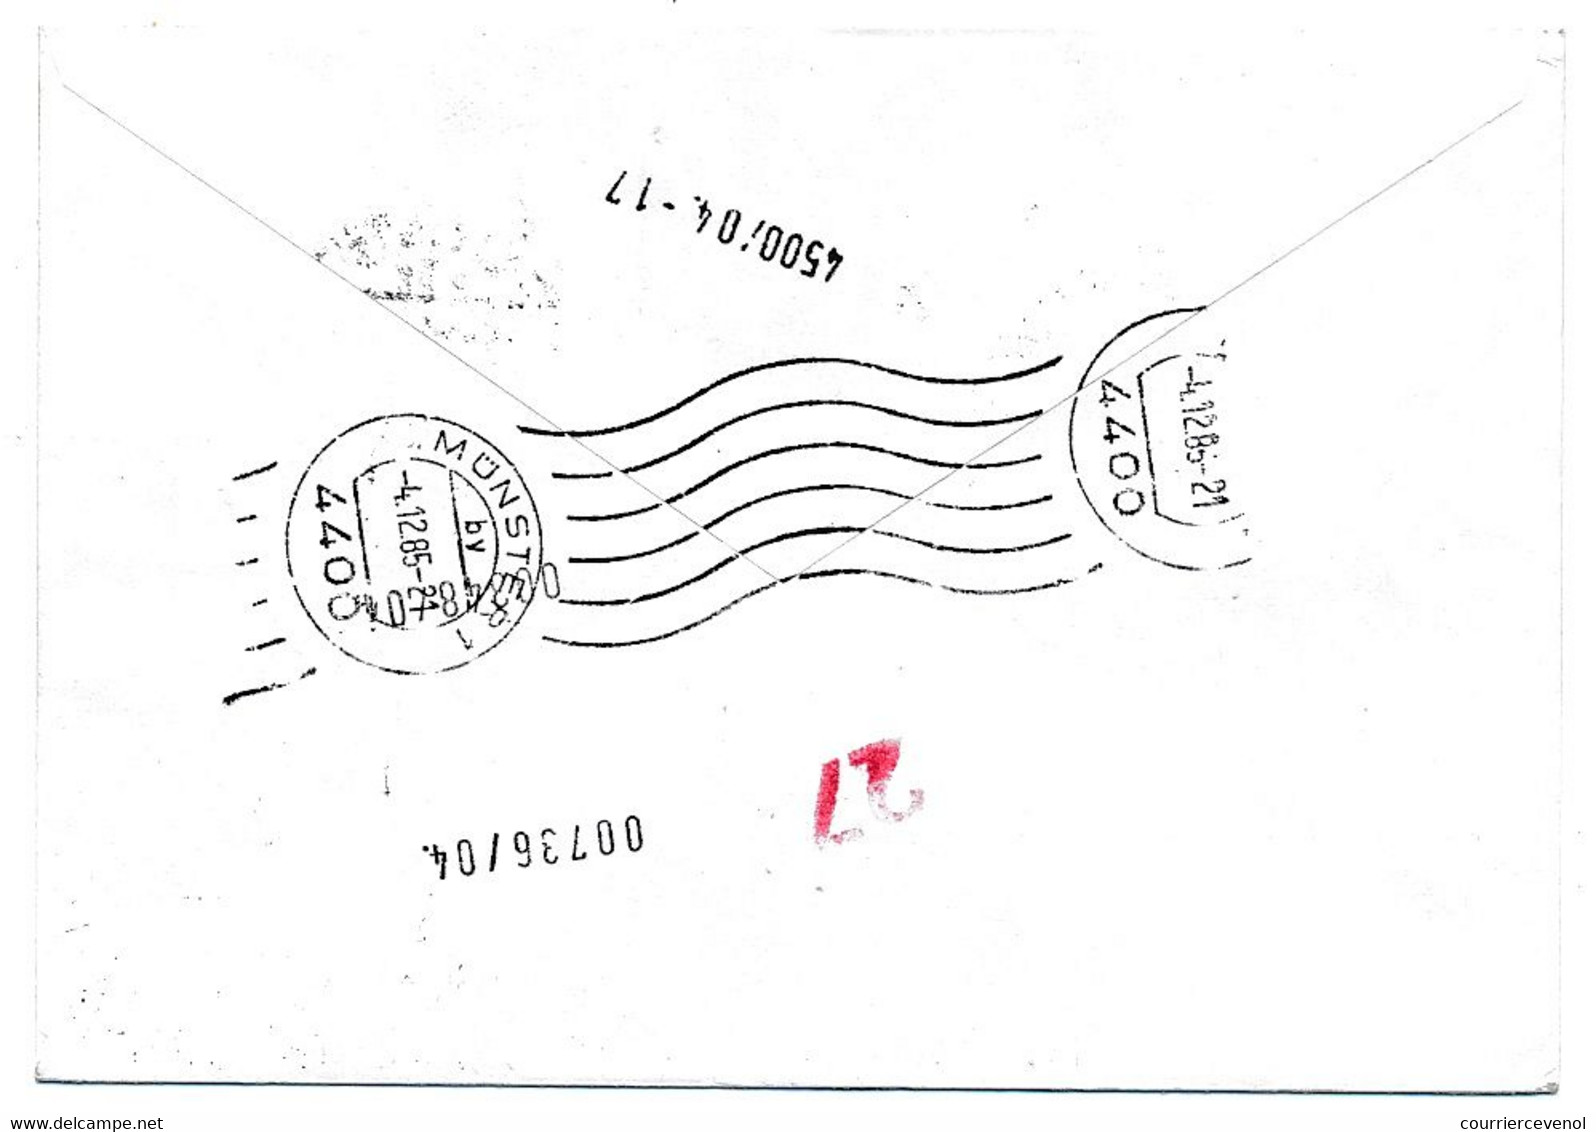 GROENLAND - 2 Enveloppes Affranchissements Composés Divers, En Exprès - 1985 - Avec Vignettes Philatelia 85 - Cartas & Documentos